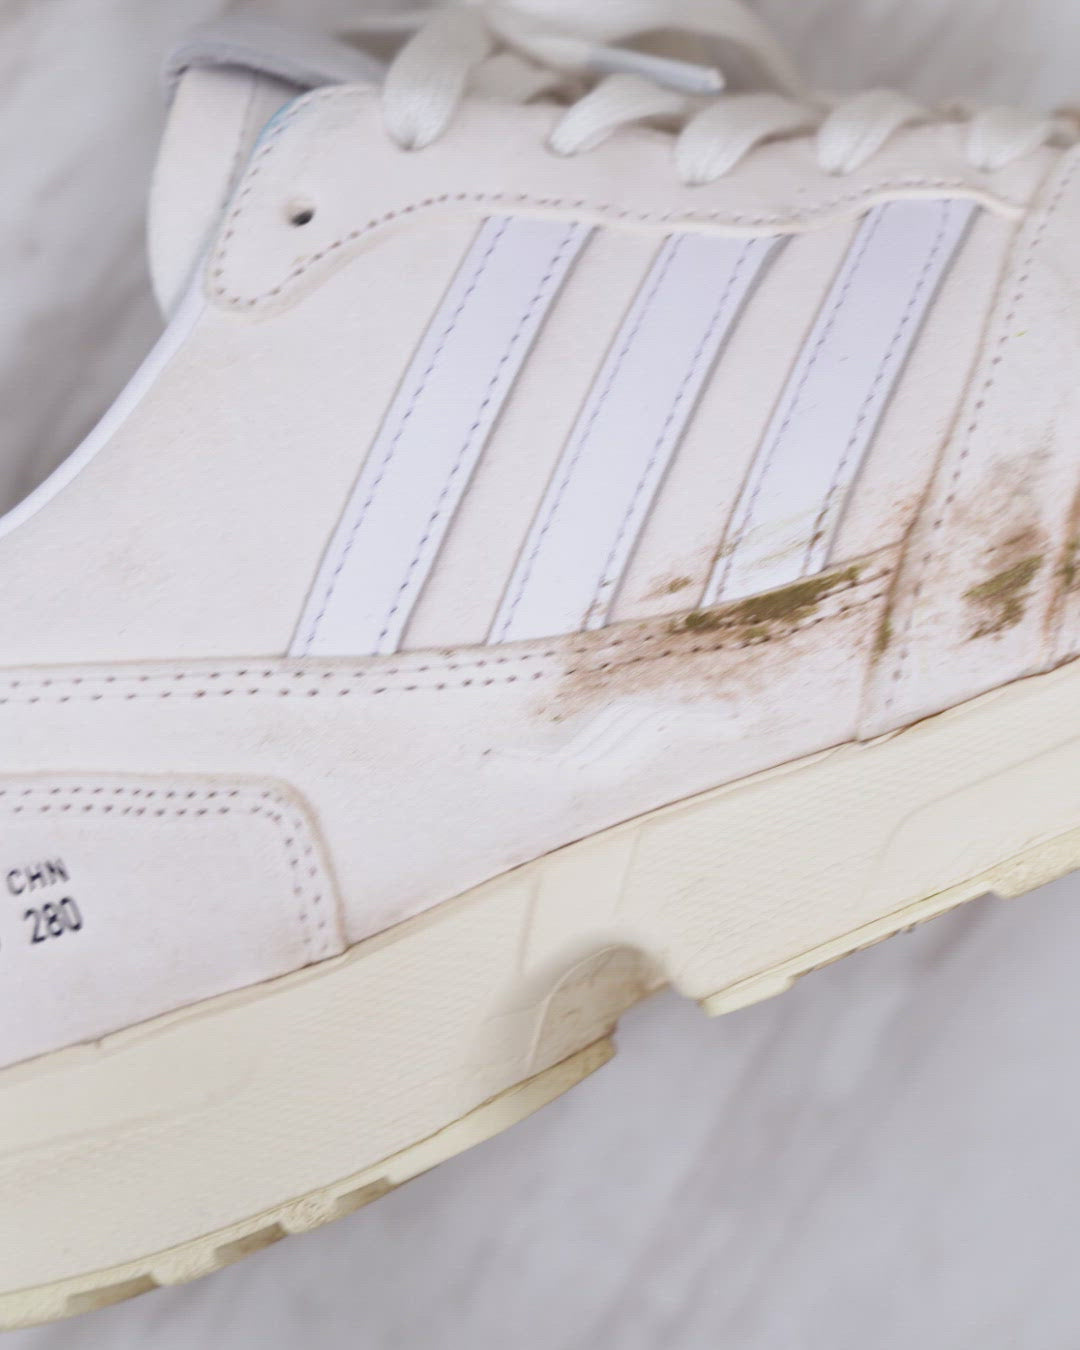 Produktvideo eines Schuhpflegeschaums der Firma Bama. Hier wird gezeigt wie bereits nach einer kurzen Einwirkzeit des Mittels von lediglich fünf Minuten dreckige Sneaker wieder blitzblank und weiß werden.